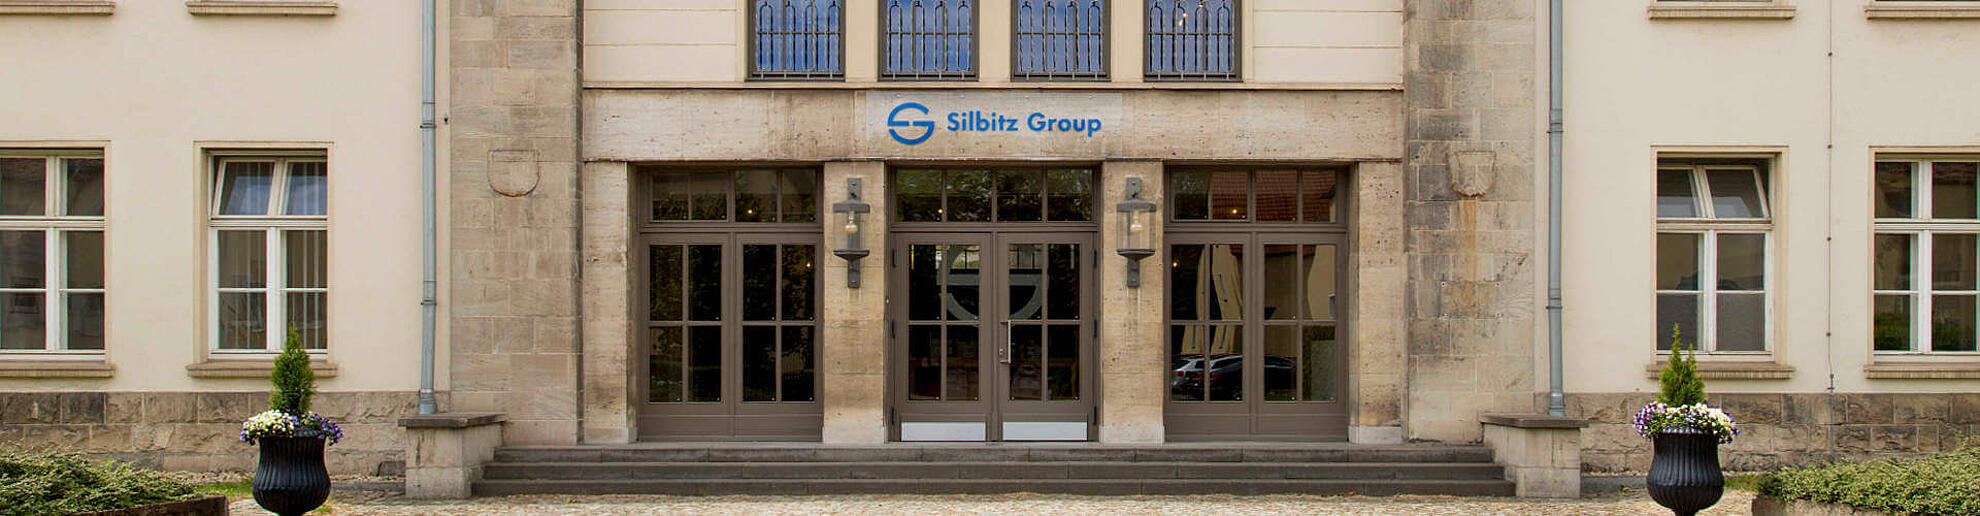 Der Eingang zum Hauptgebäude der Silbitz Group